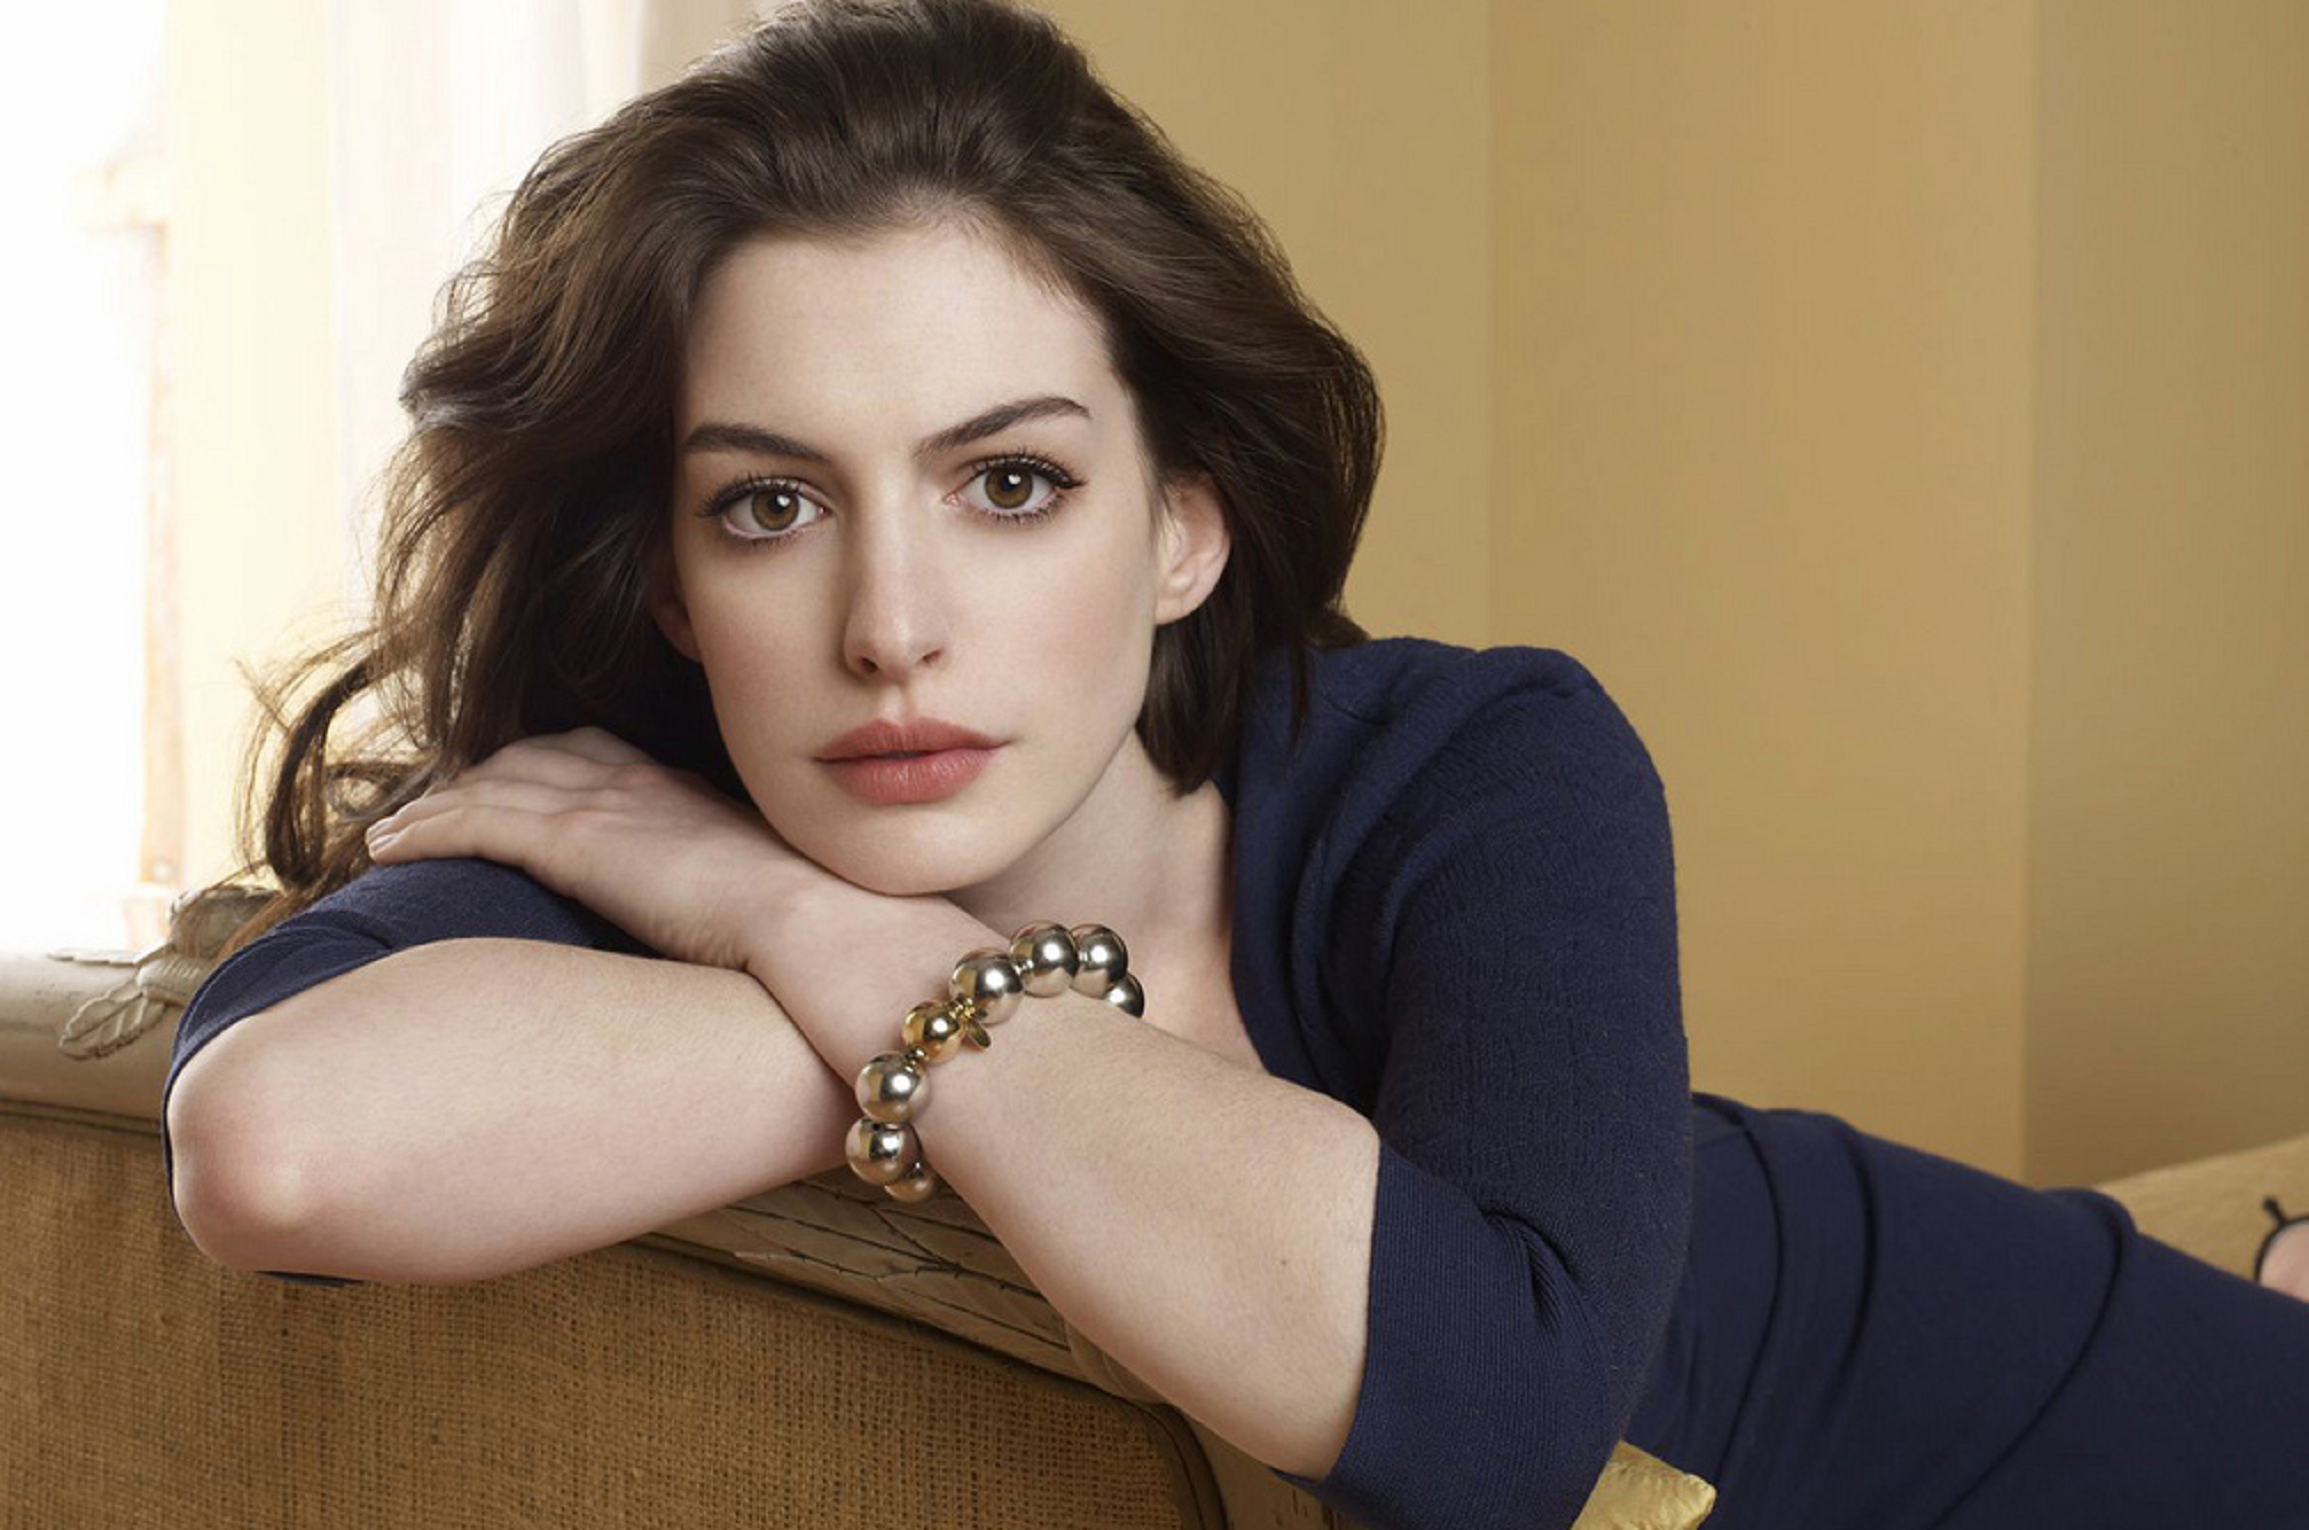 Roben fotografies íntimes del mòbil d’Anne Hathaway